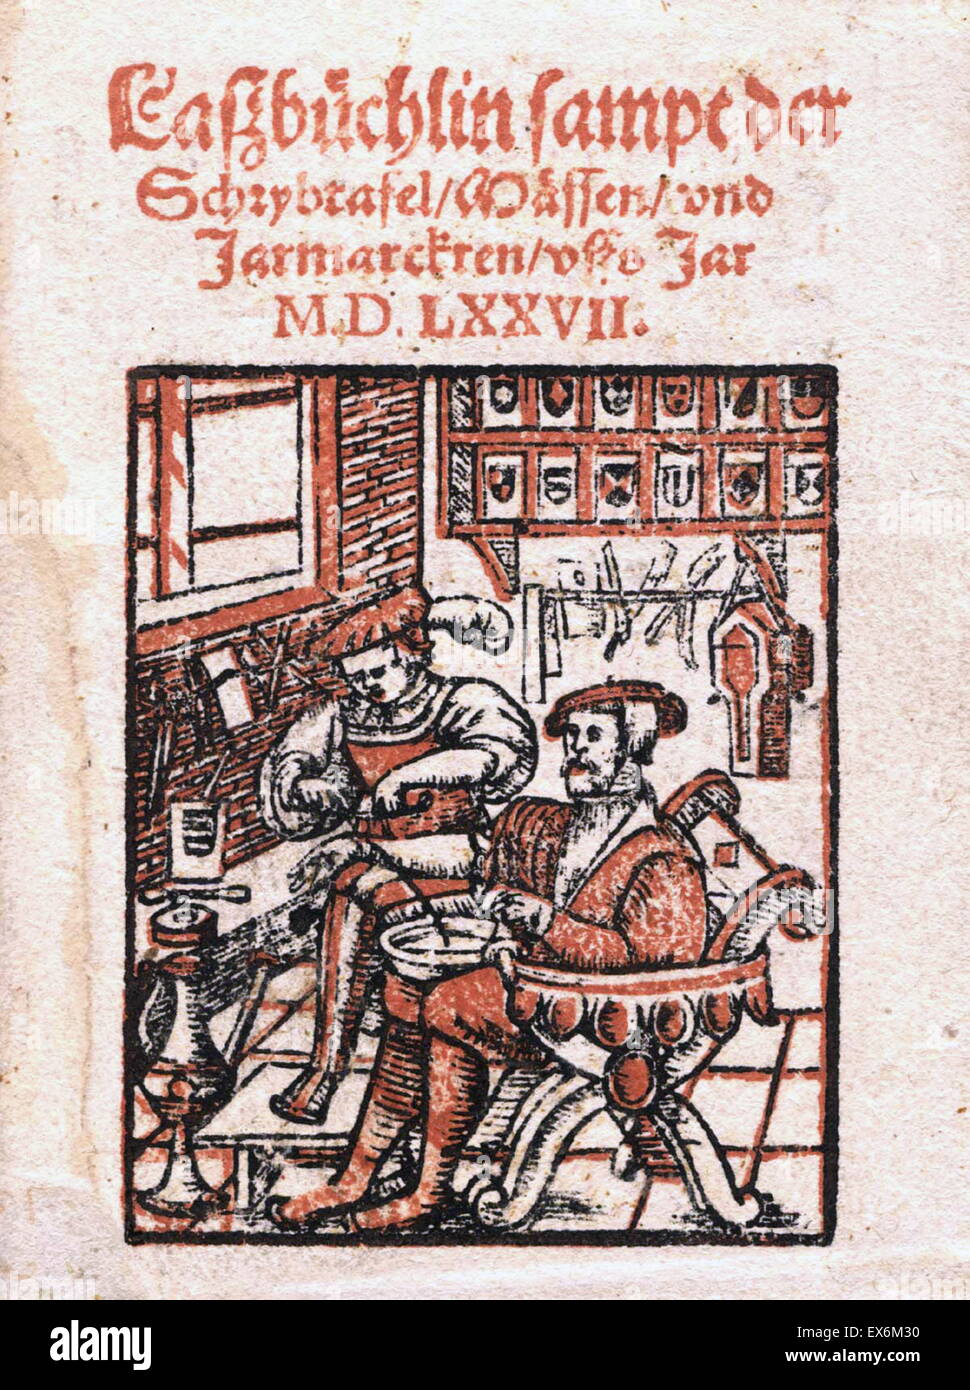 Hans Kaspar Wolf. Lassbüchlin sampt der Schrybtafel, Mässen, und Jarmarckten, uffs Jar M.D.LXXVII. Zürich, 1577 Stock Photo